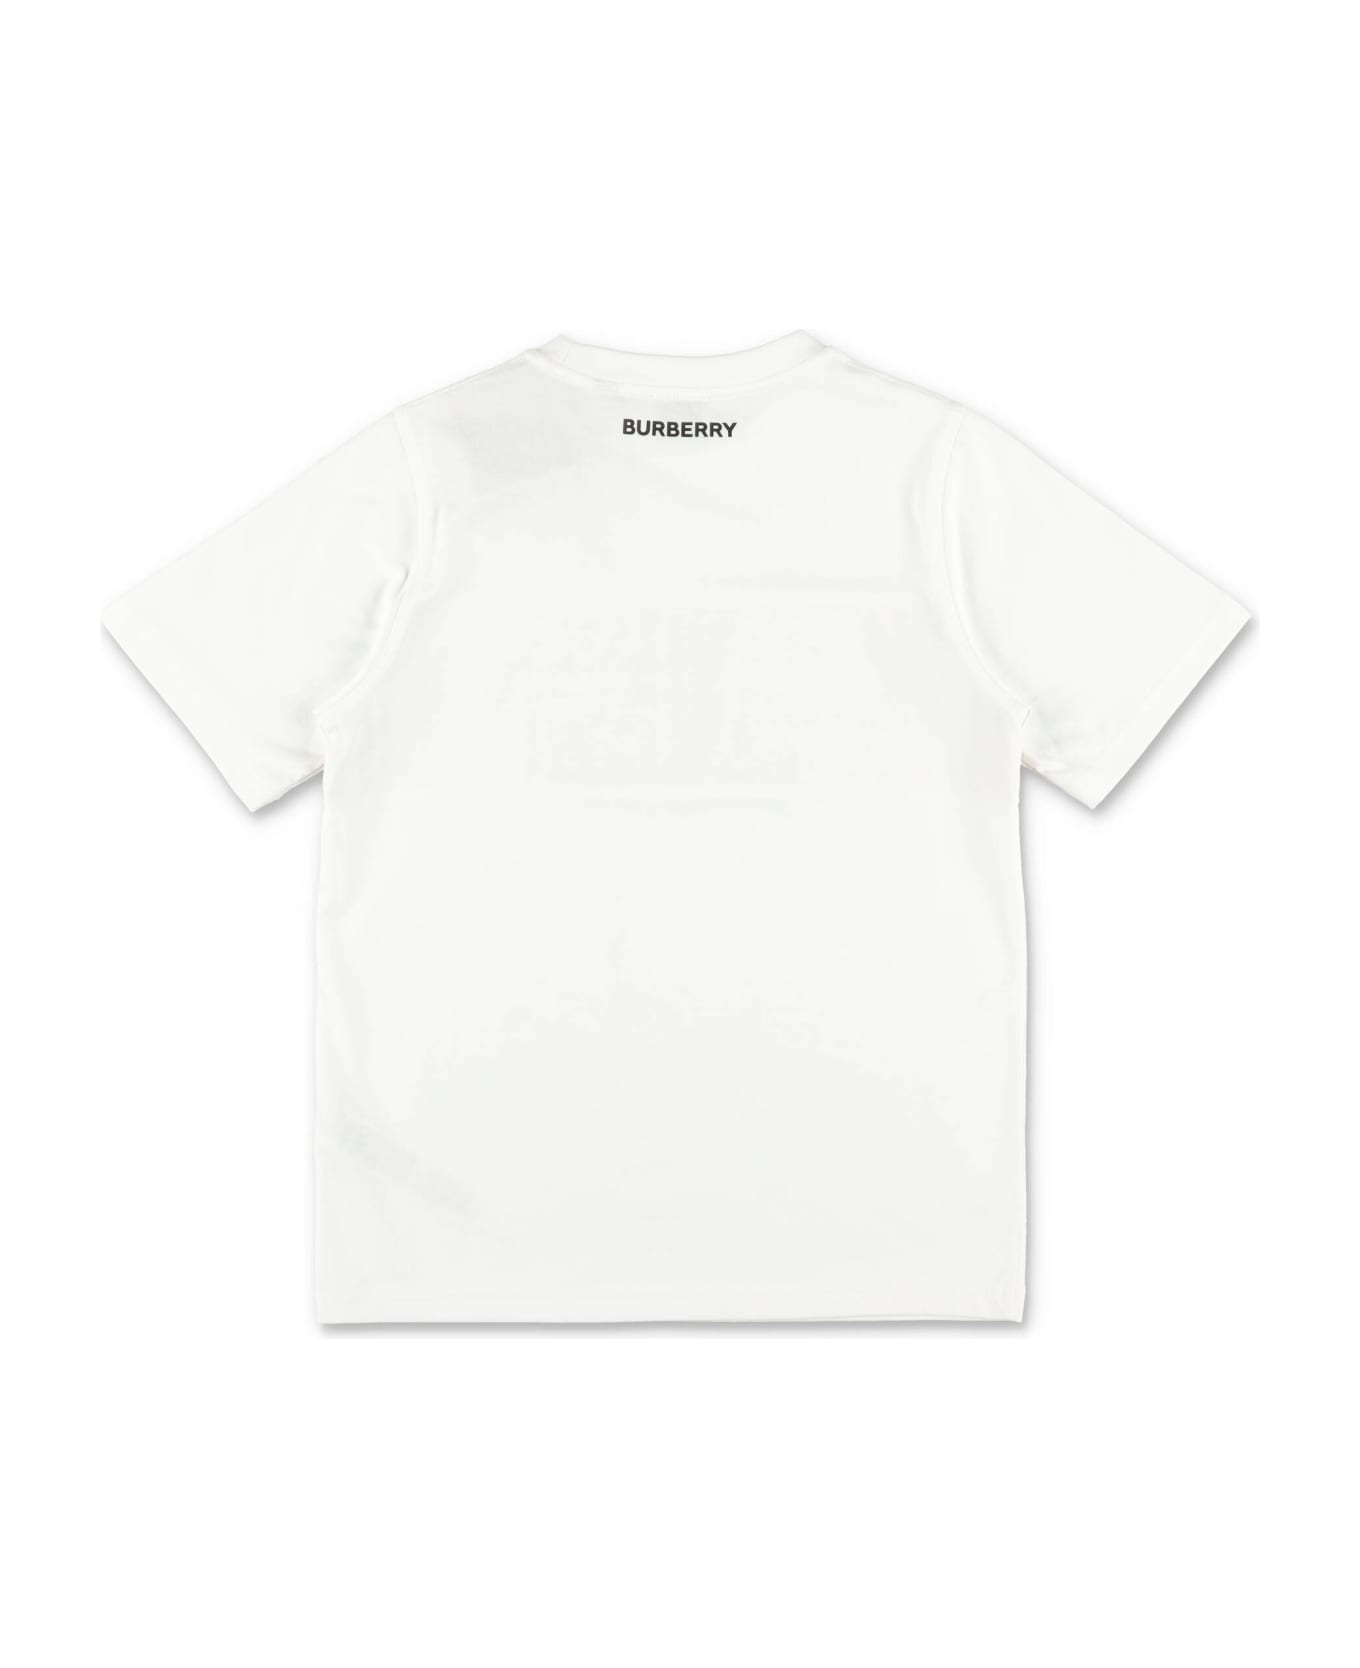 Burberry T-shirt Bianca Cedar In Jersey Di Cotone Bambino - Bianco